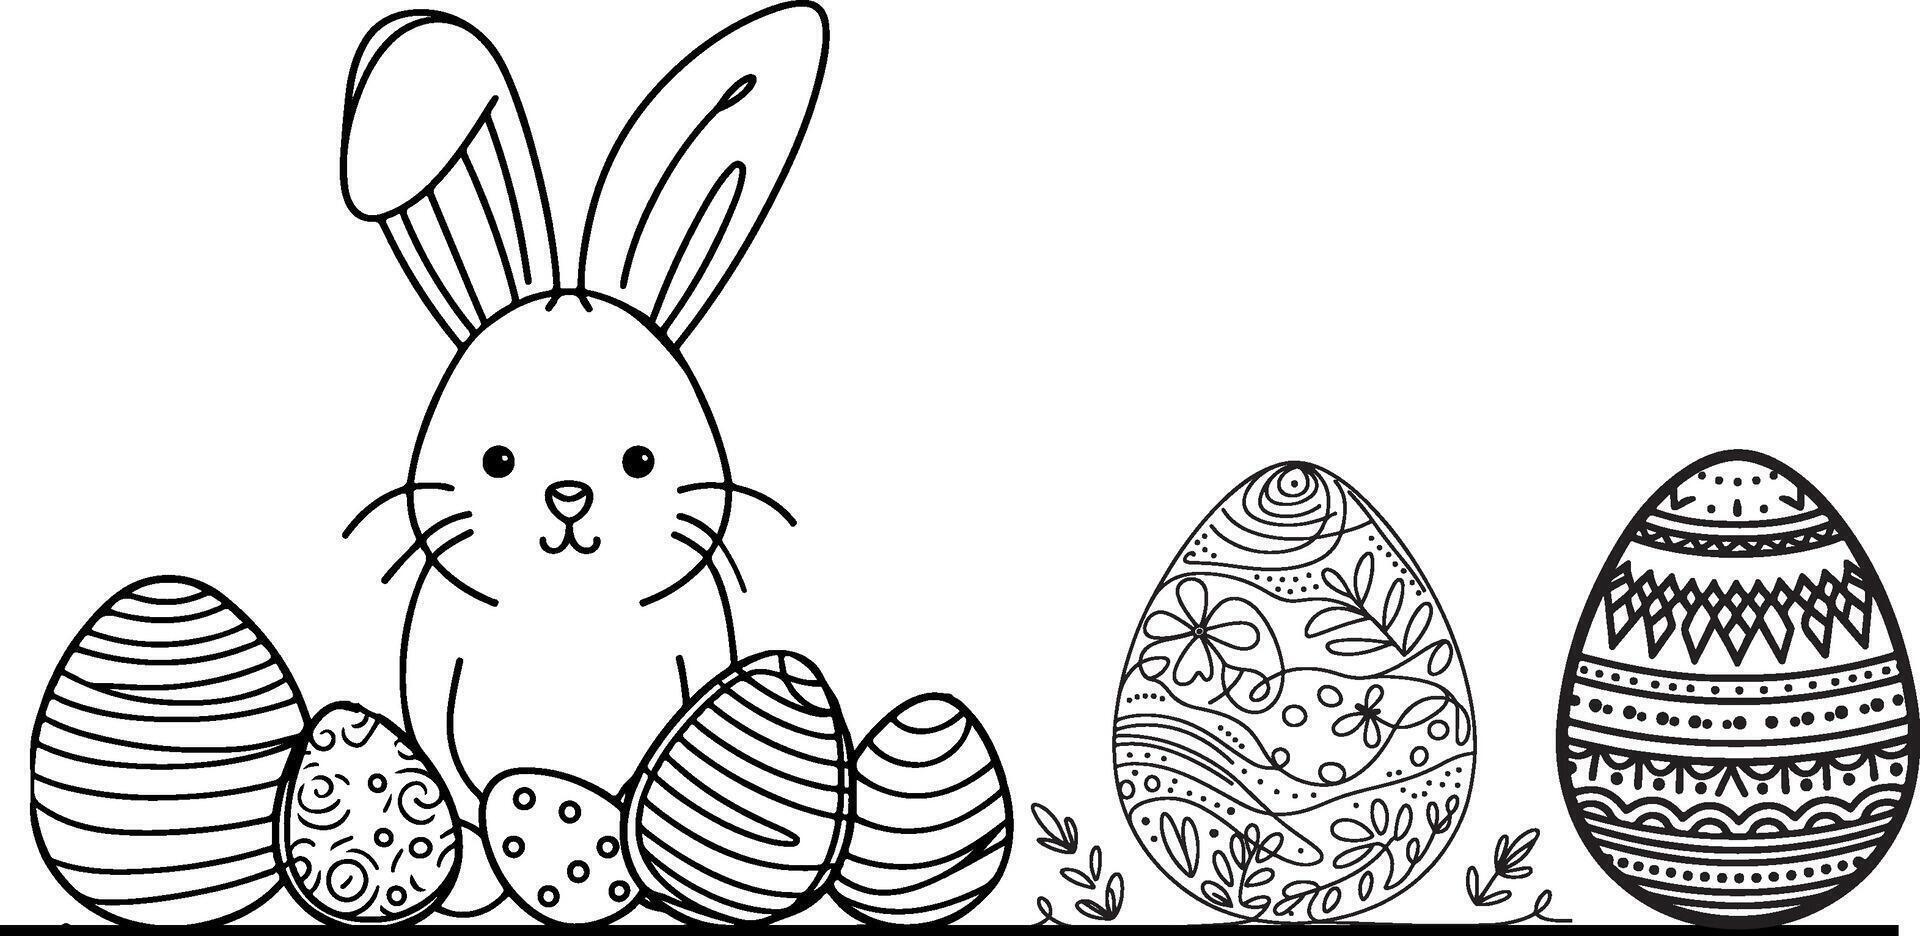 mano dibujado negro línea Arte Conejo Pascua de Resurrección huevo garabatear colorante lineal estilo vector ilustración elementos. uno continuo línea dibujo conejito con huevos editable carrera contorno